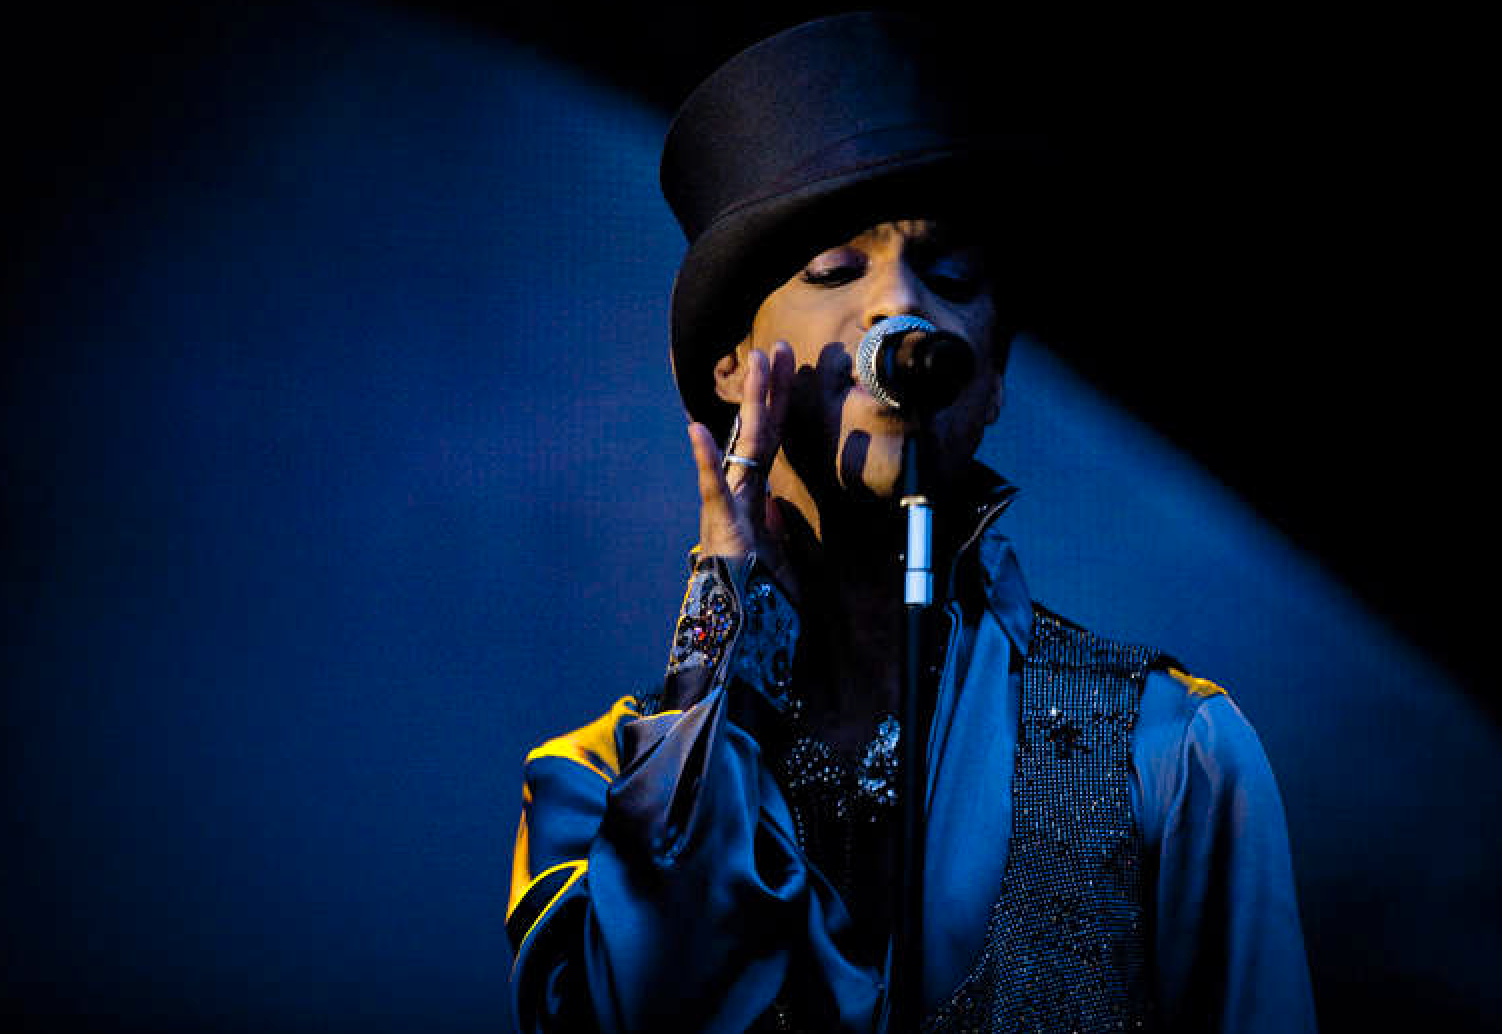 Princes musik är med i Spike Lees nya film ”Blackkklansman” och i veckans spellista. Något annat vore otänkbart. 